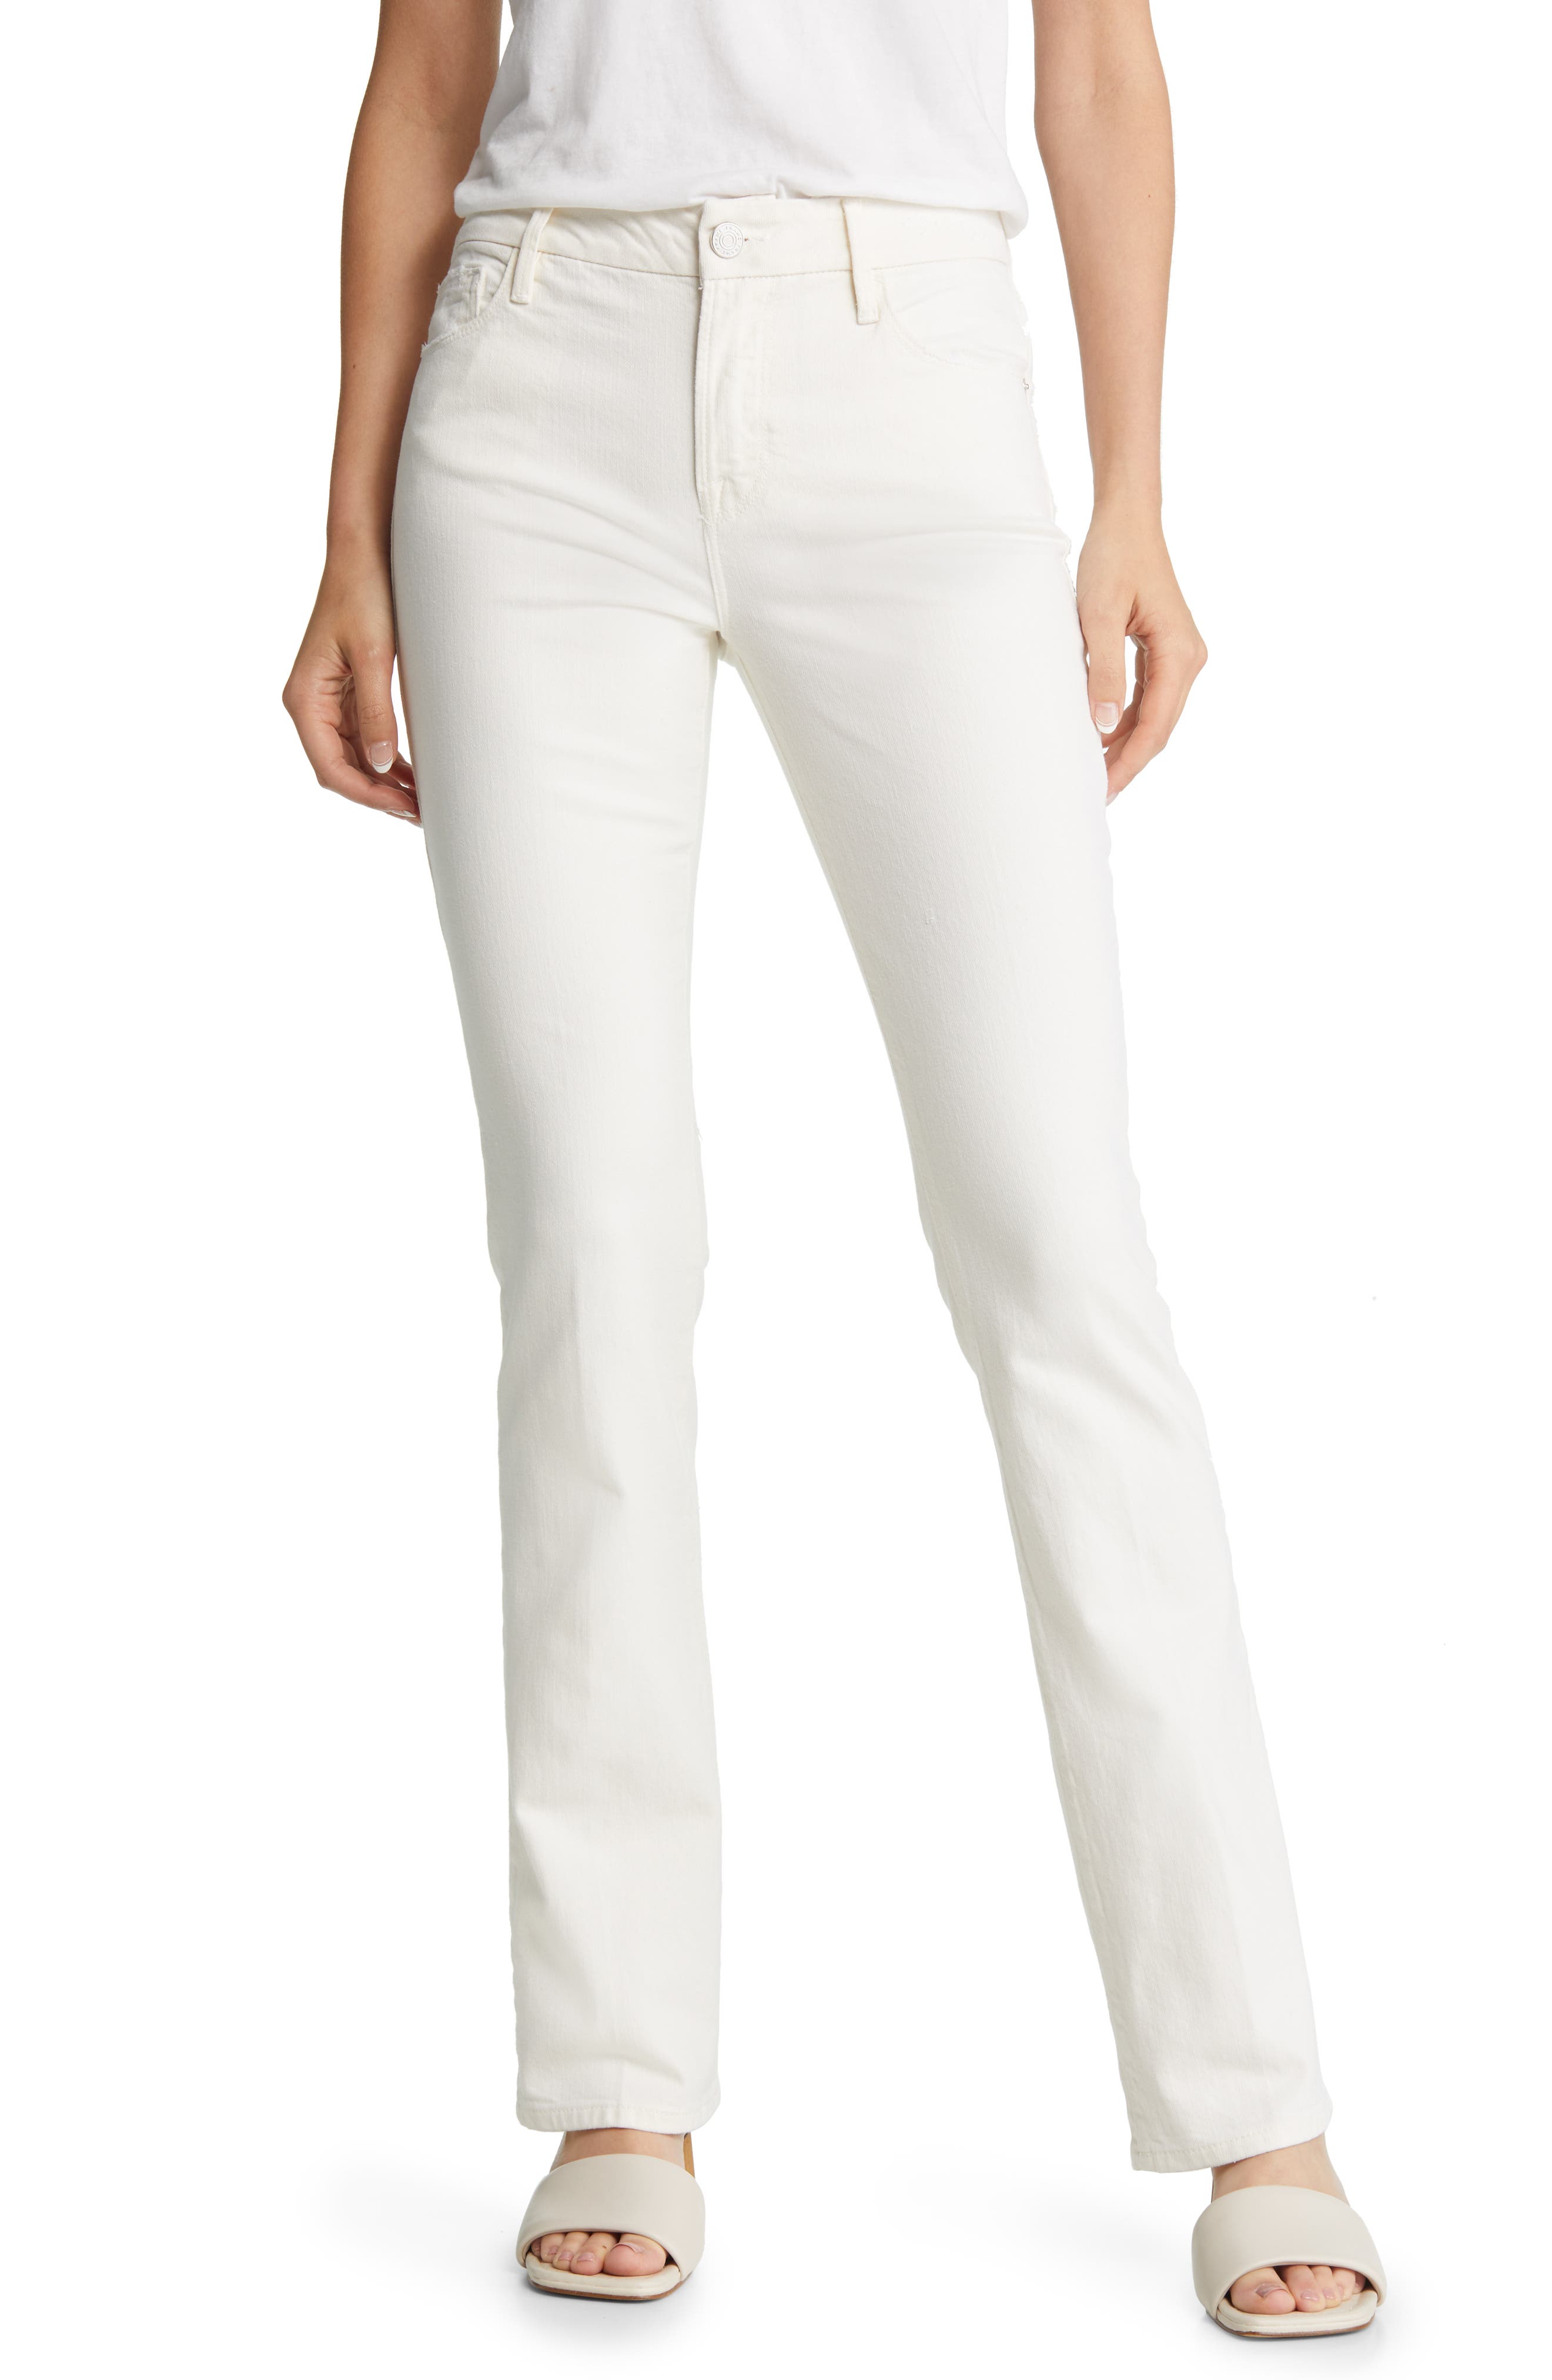 New Womens White Boyfriend NEXT Jeans Size 16 12 10 8 6 Long Reg Petite RRP £32 